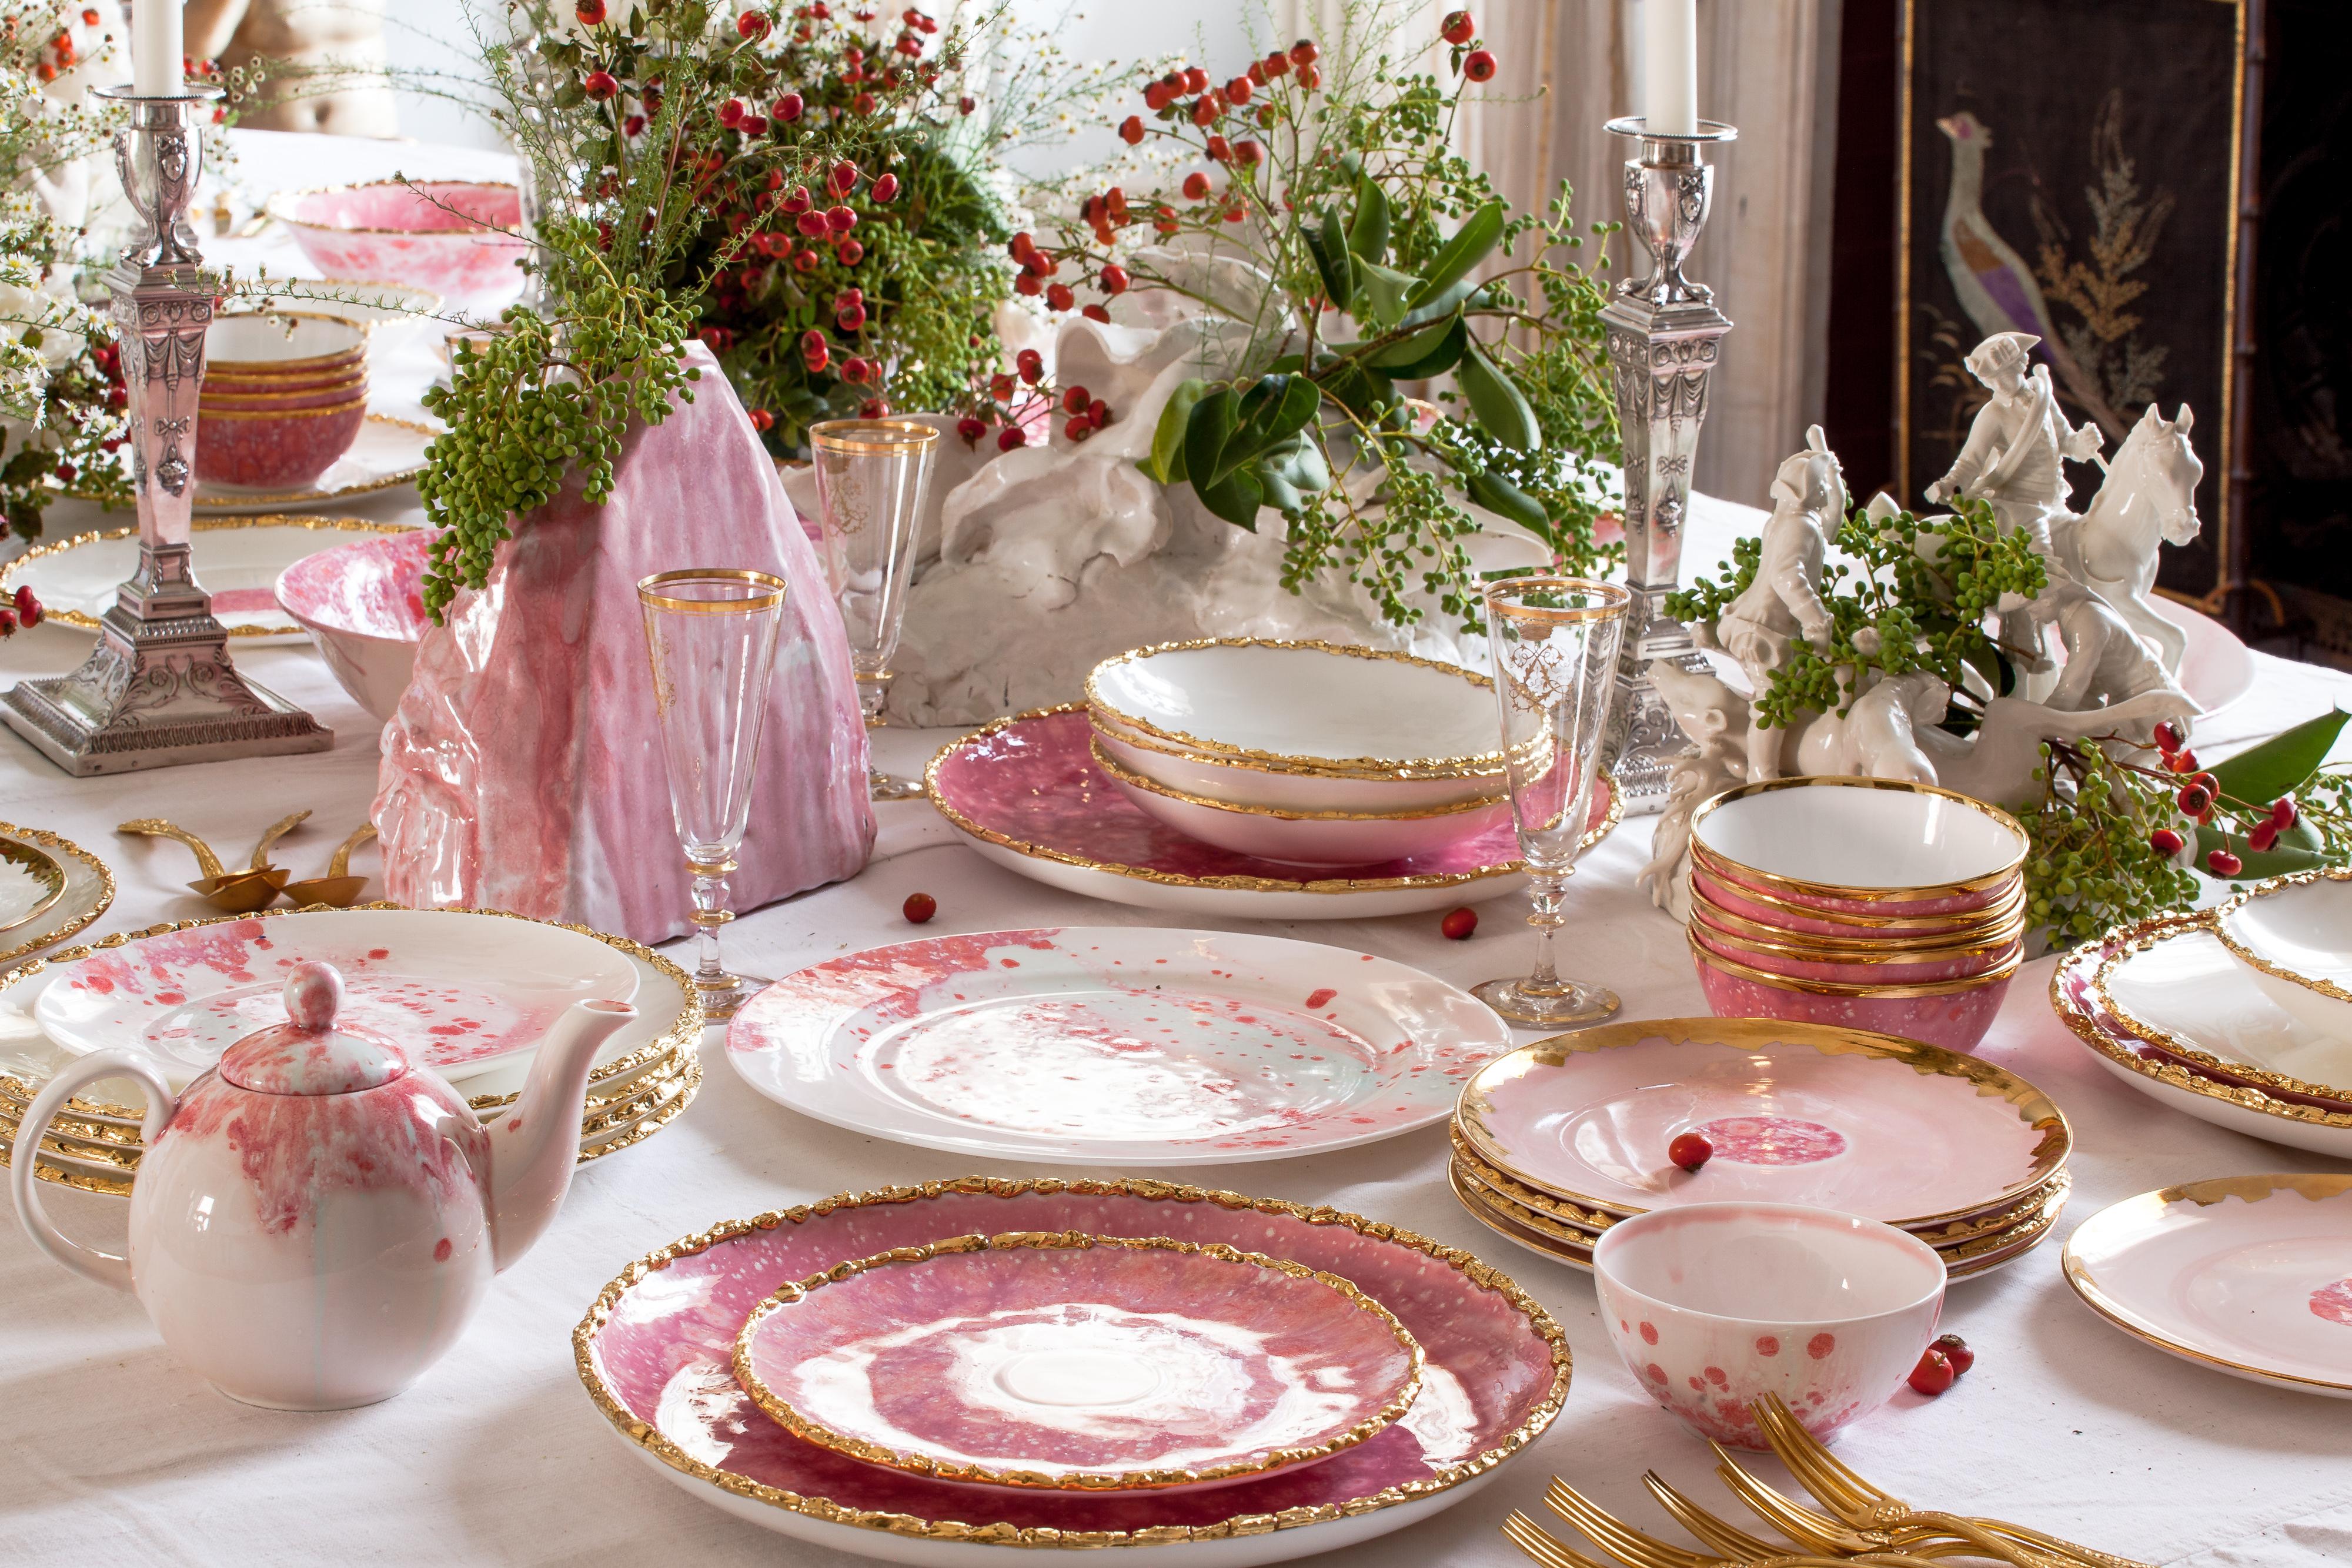 Fabriquée à la main en Italie à partir de la porcelaine la plus fine, cette assiette ovale Berry présente un bord original craquelé et doré qui met en valeur le décor rose et le centre jaune.

Assiette à bord ovale, bord craquelé 36 x 24cm